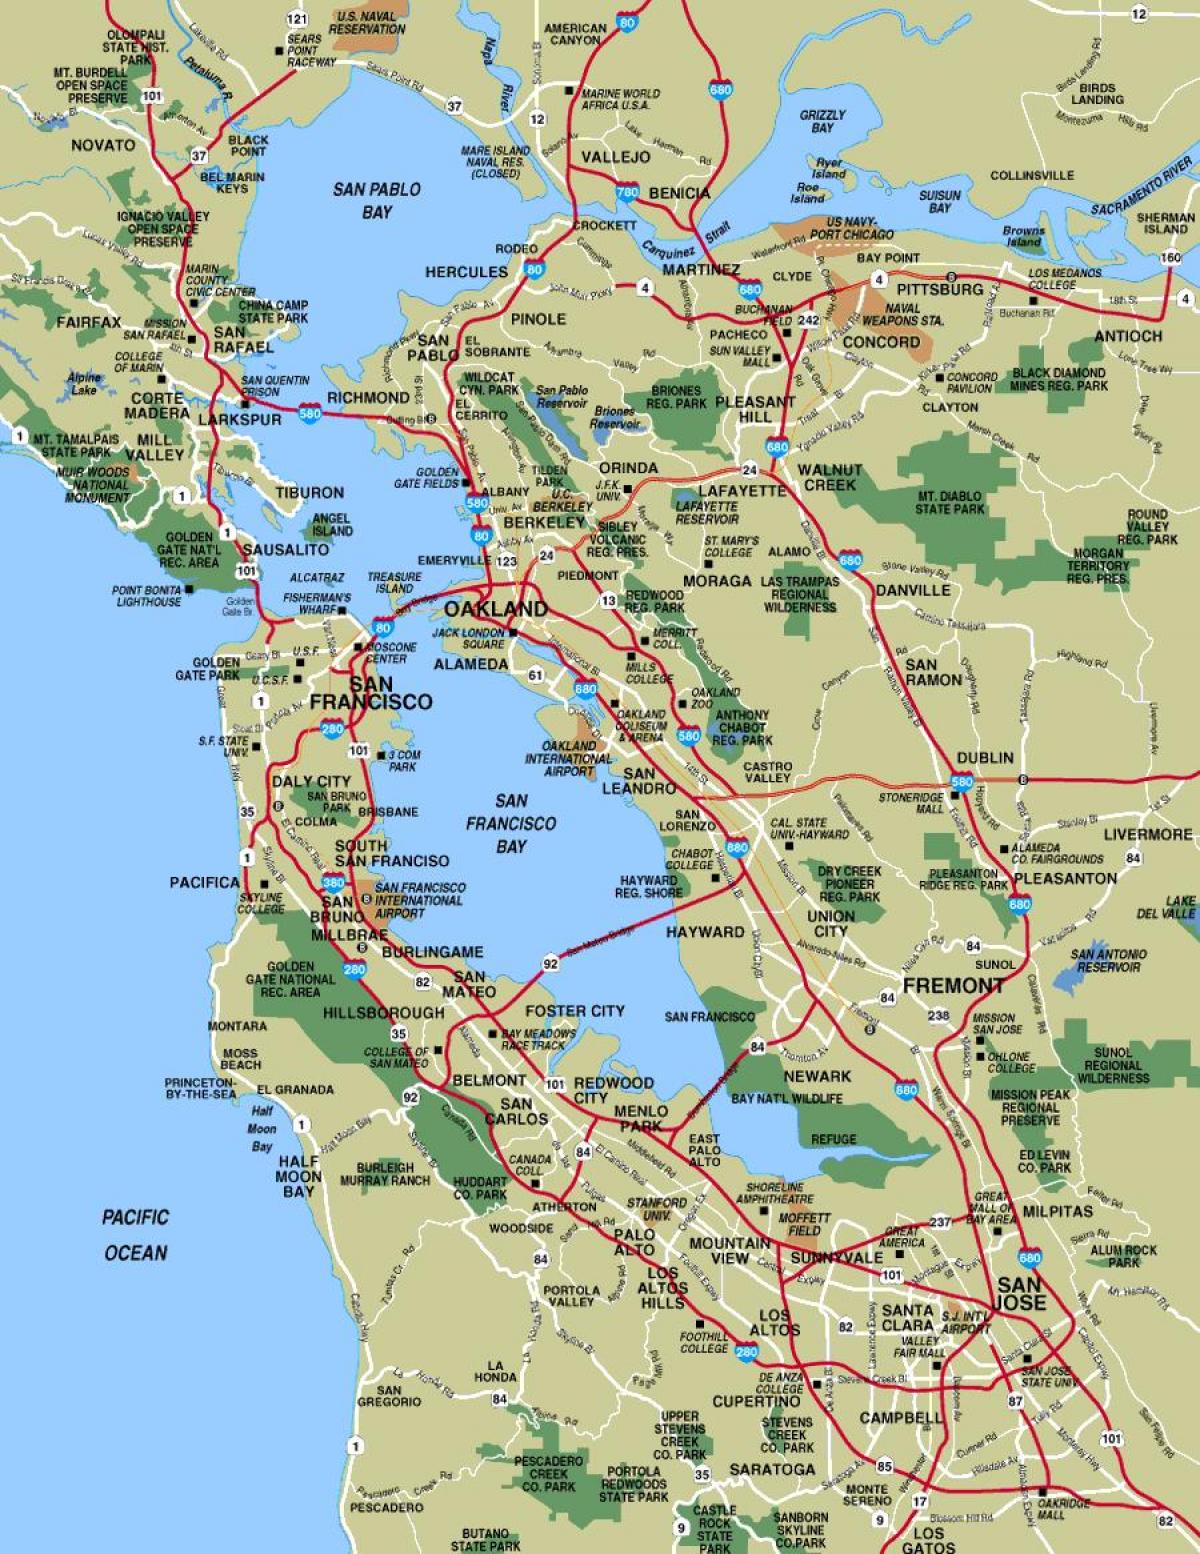 मानचित्र के अधिक से अधिक सैन फ्रांसिस्को क्षेत्र